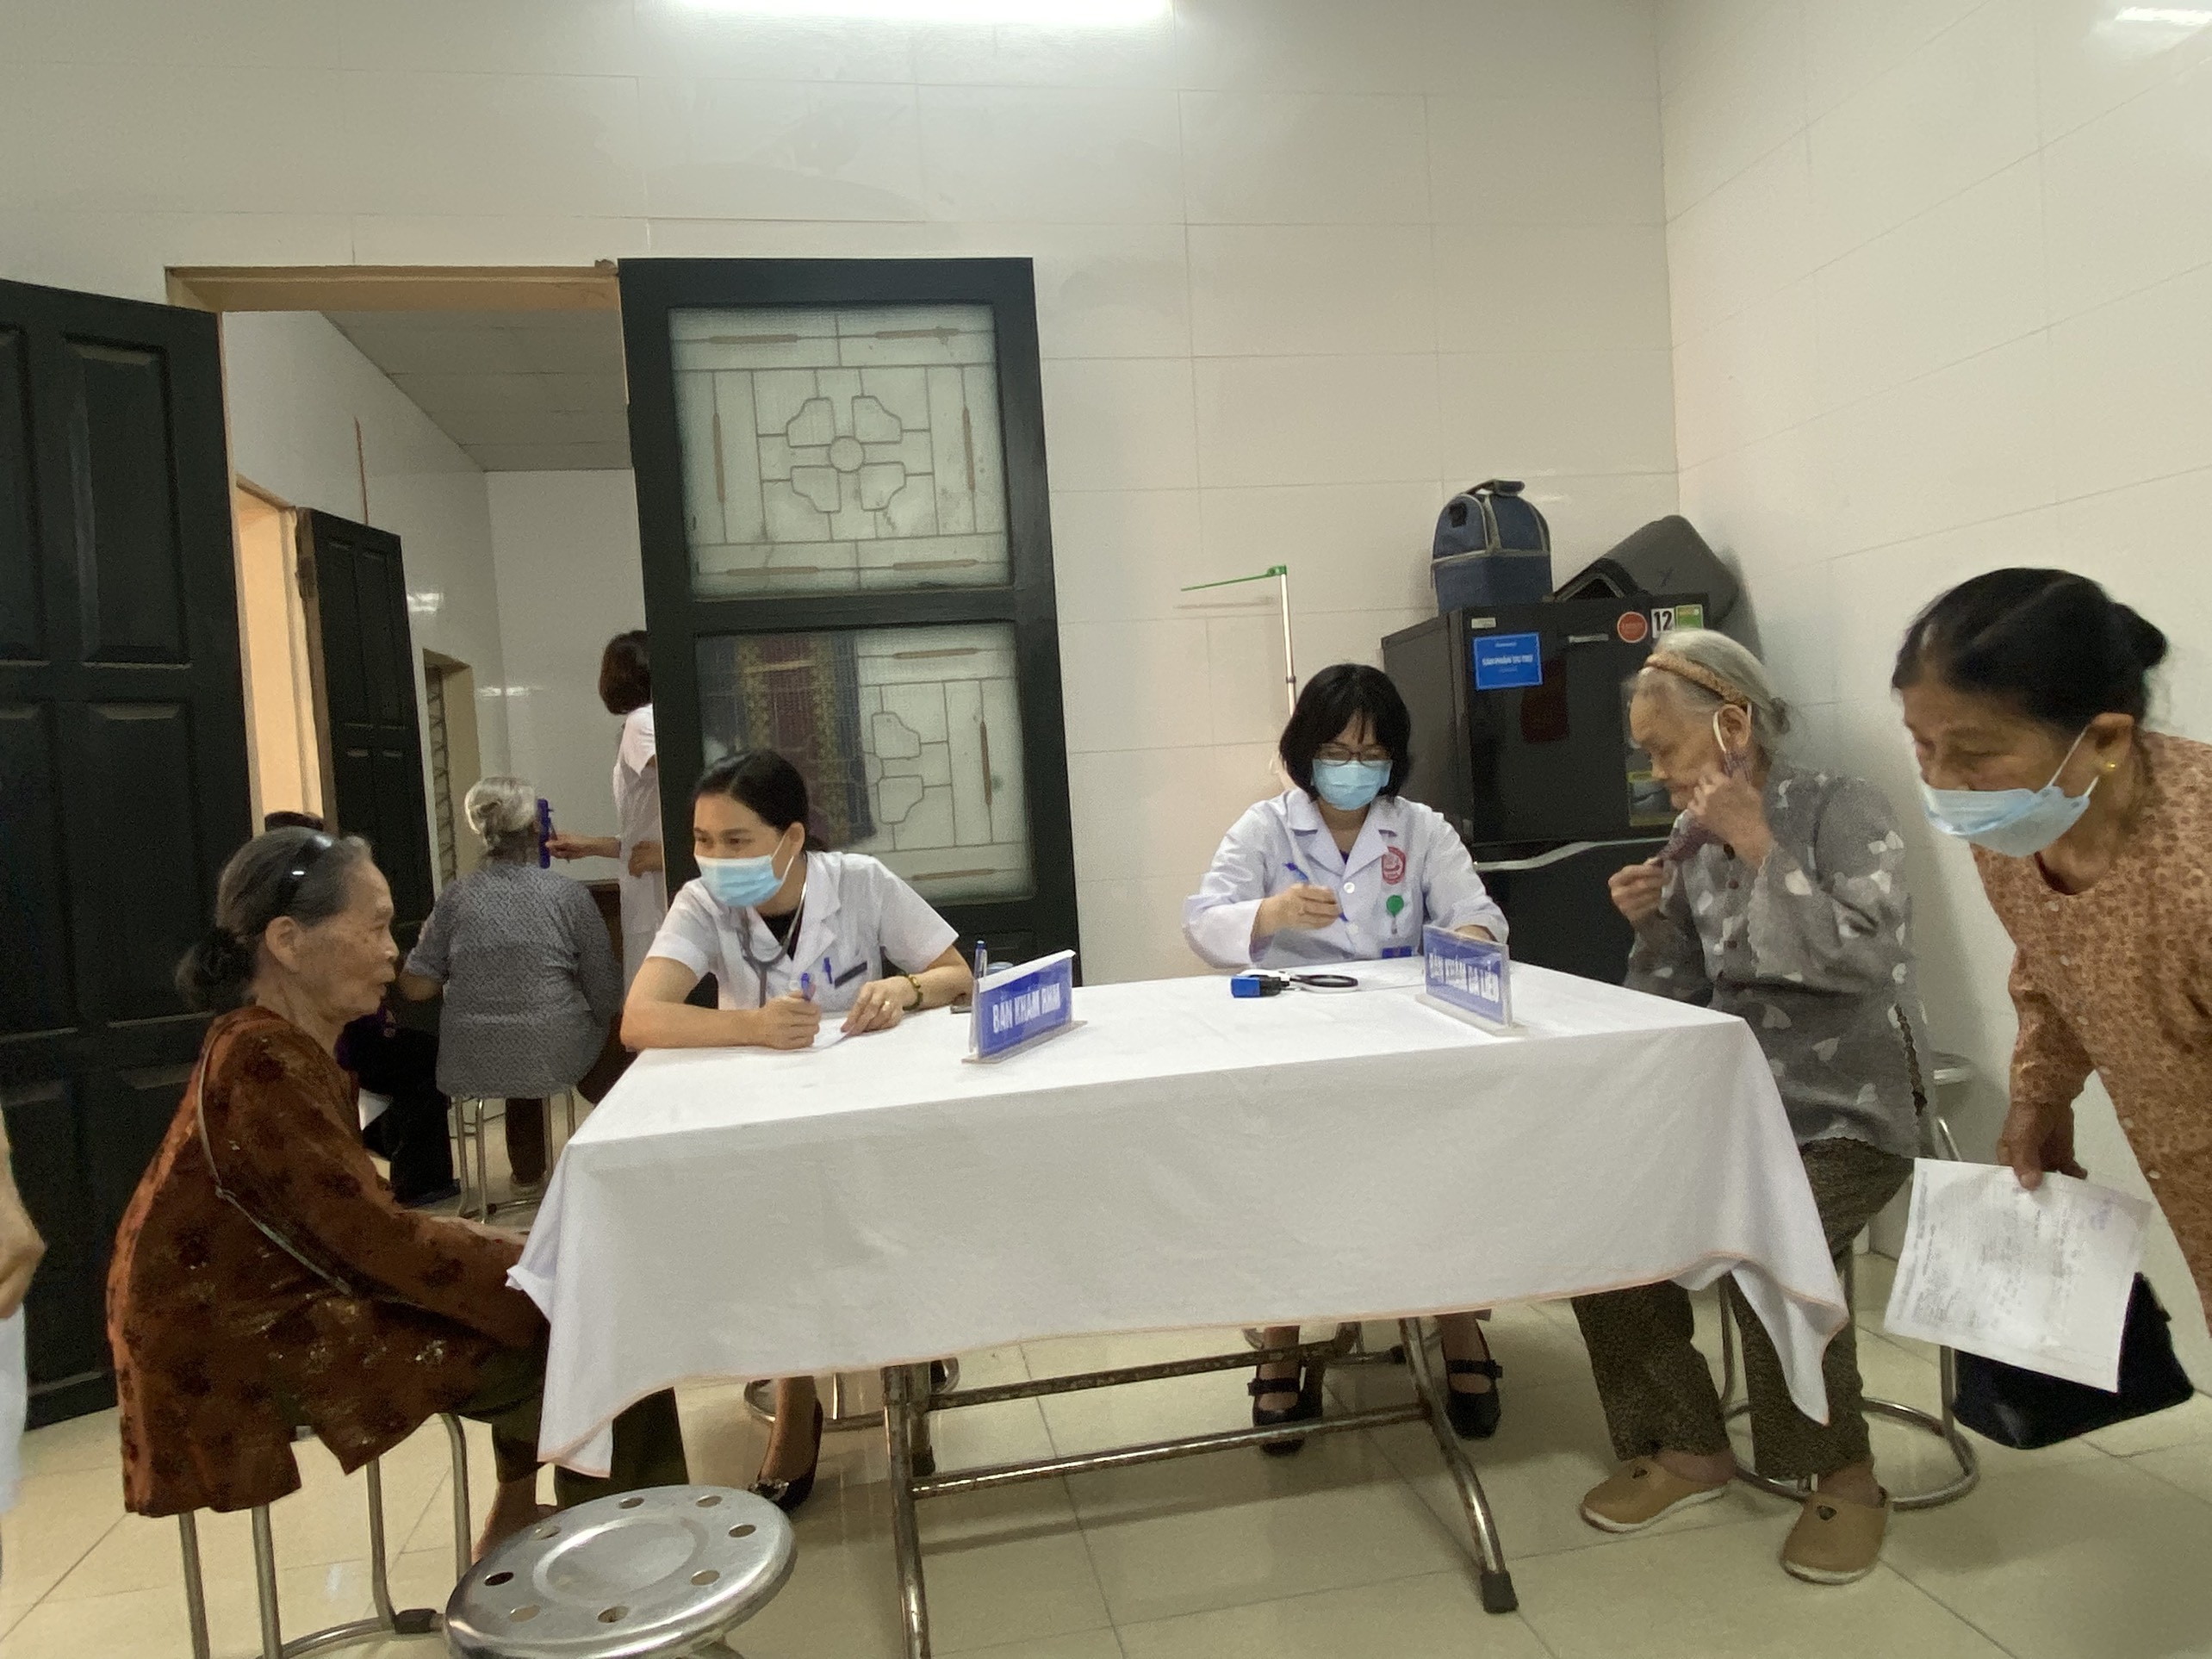 Trung tâm Kiểm soát bệnh tật: Khám bệnh miễn phí cho bệnh nhân gia đình chính sách tại phường Thọ...|https://kiemsoatbenhtatbacgiang.vn/chi-tiet-tin-tuc/-/asset_publisher/M0UUAFstbTMq/content/trung-tam-kiem-soat-benh-tat-kham-benh-mien-phi-cho-benh-nhan-gia-inh-chinh-sach-tai-phuong-tho-xuong